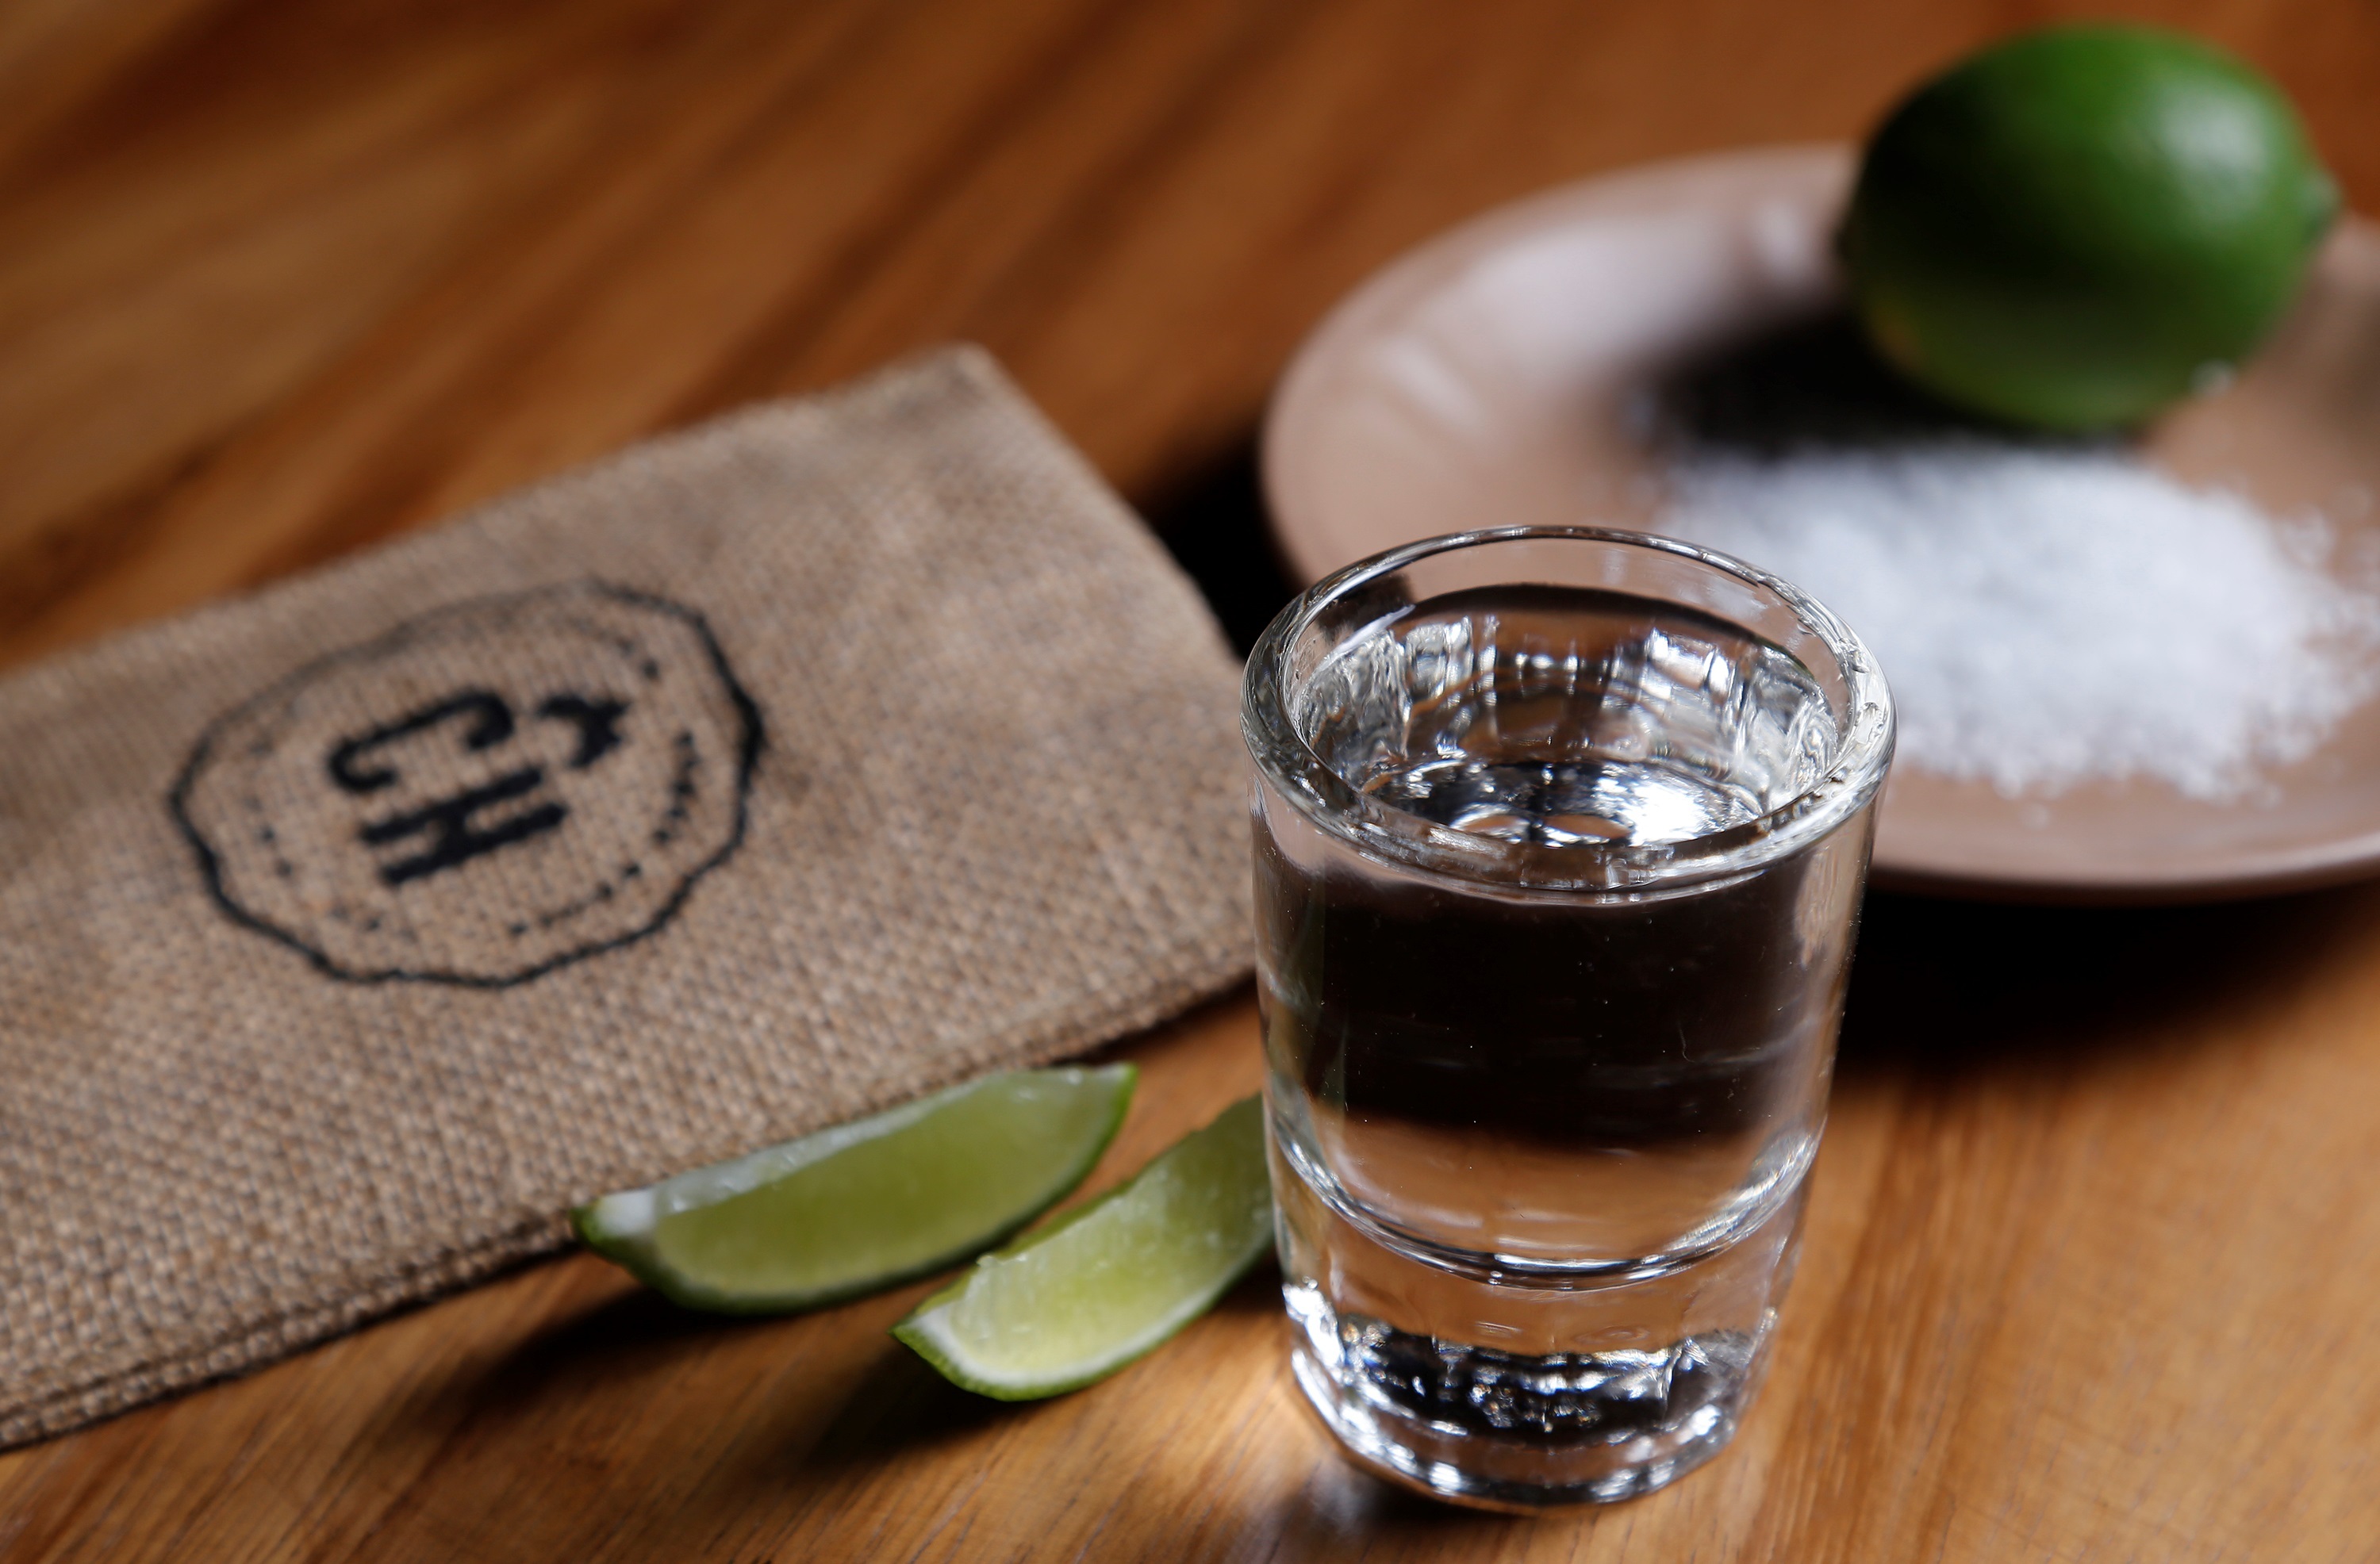 El tequila tiene denominación de origen y se produce en Jalisco, México. (EFE/Francisco Guasco)
